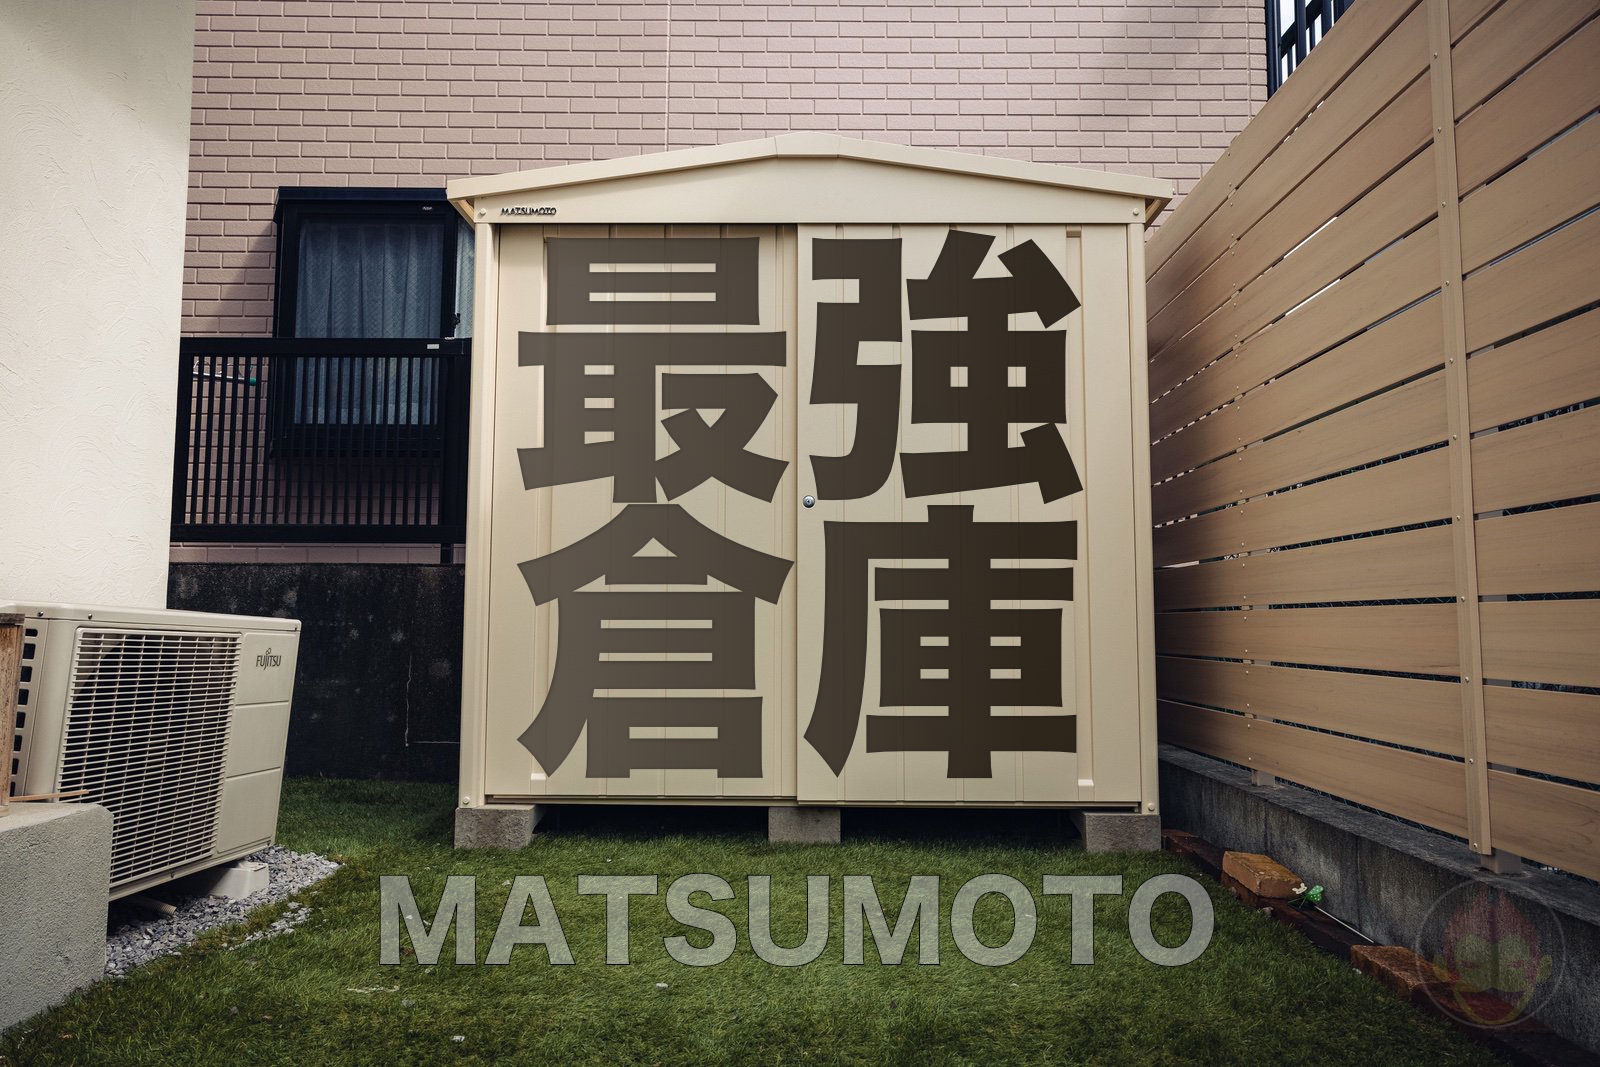 Matsumoto Monooki home storage space top